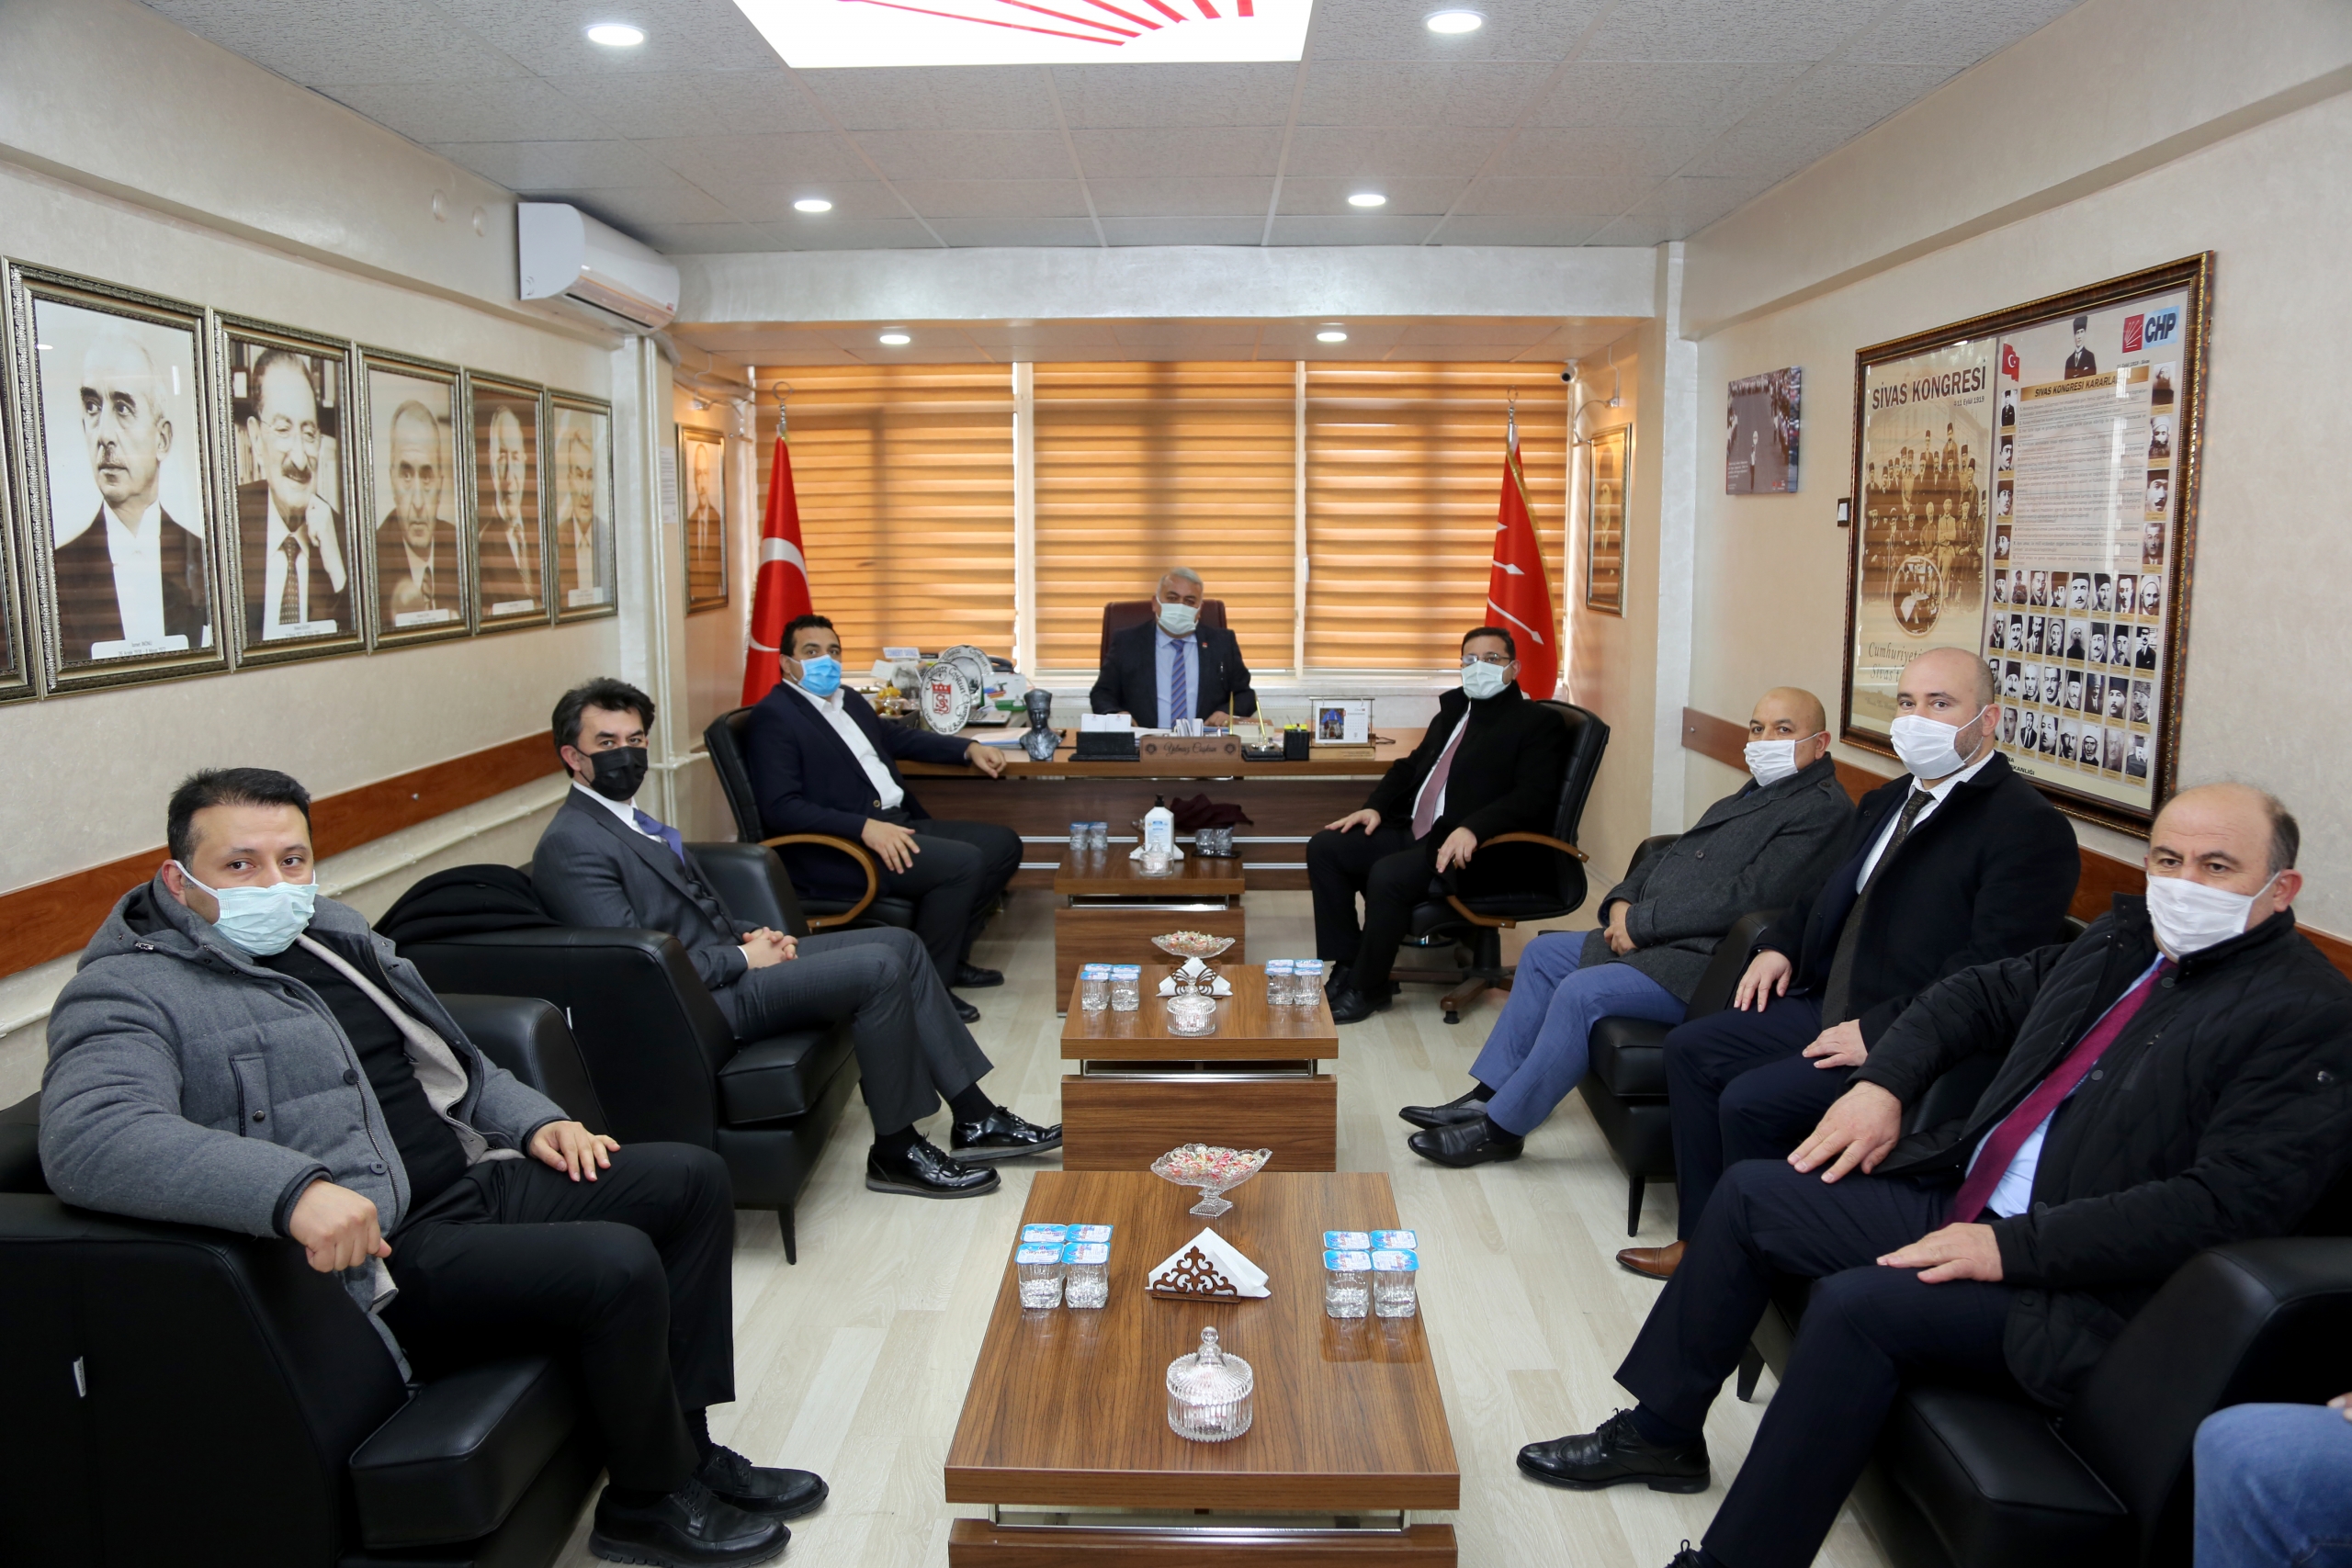 Sivas Ticaret ve Sanayi Odası (STSO) Başkanı Mustafa Eken ve yönetimi, siyasi partileri ziyaret etti